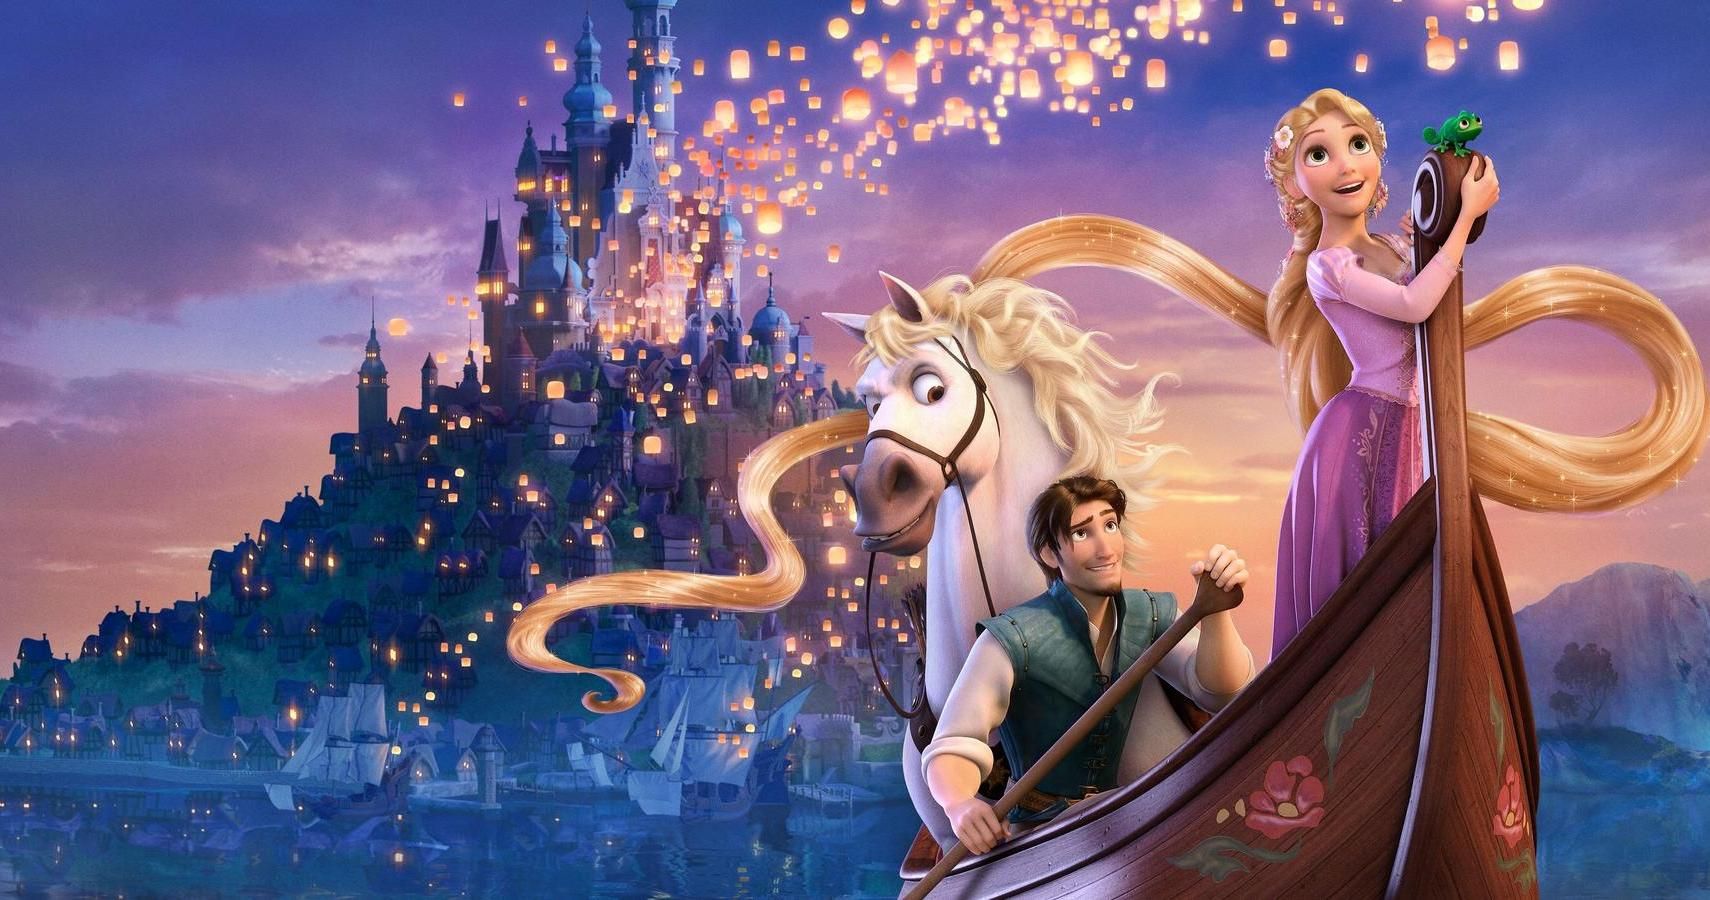 10 Things About Disneys Tangled That Make No Sense